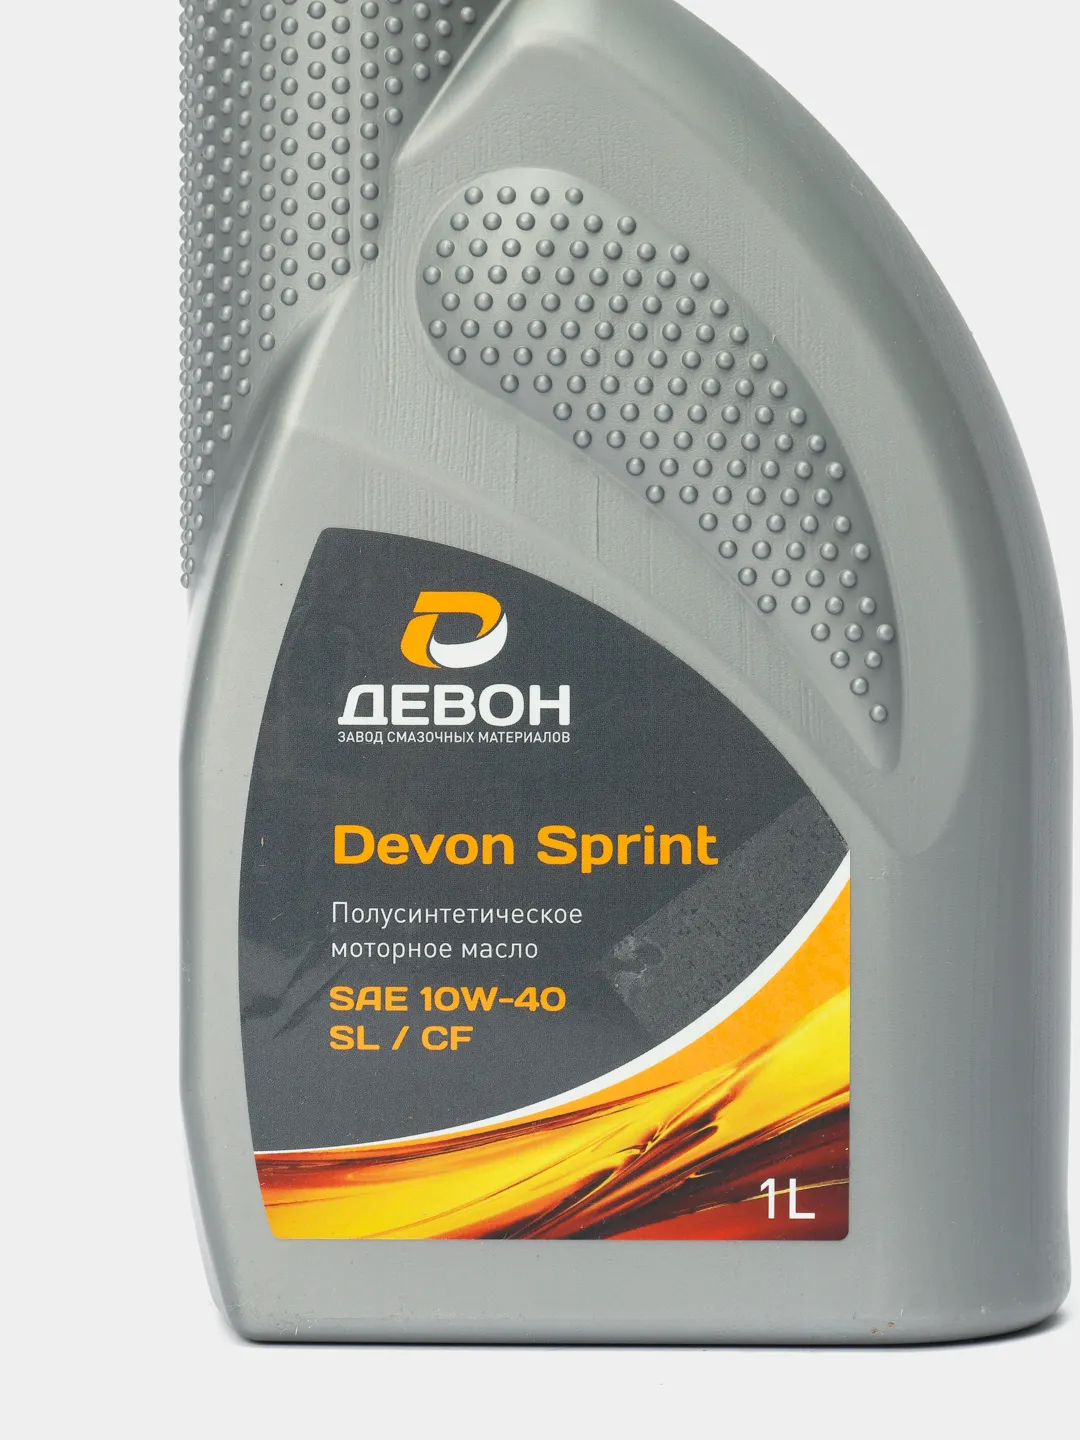  масло Девон / Devon Sprint SAE 10W-40 SL/CF Полусинтетическое .